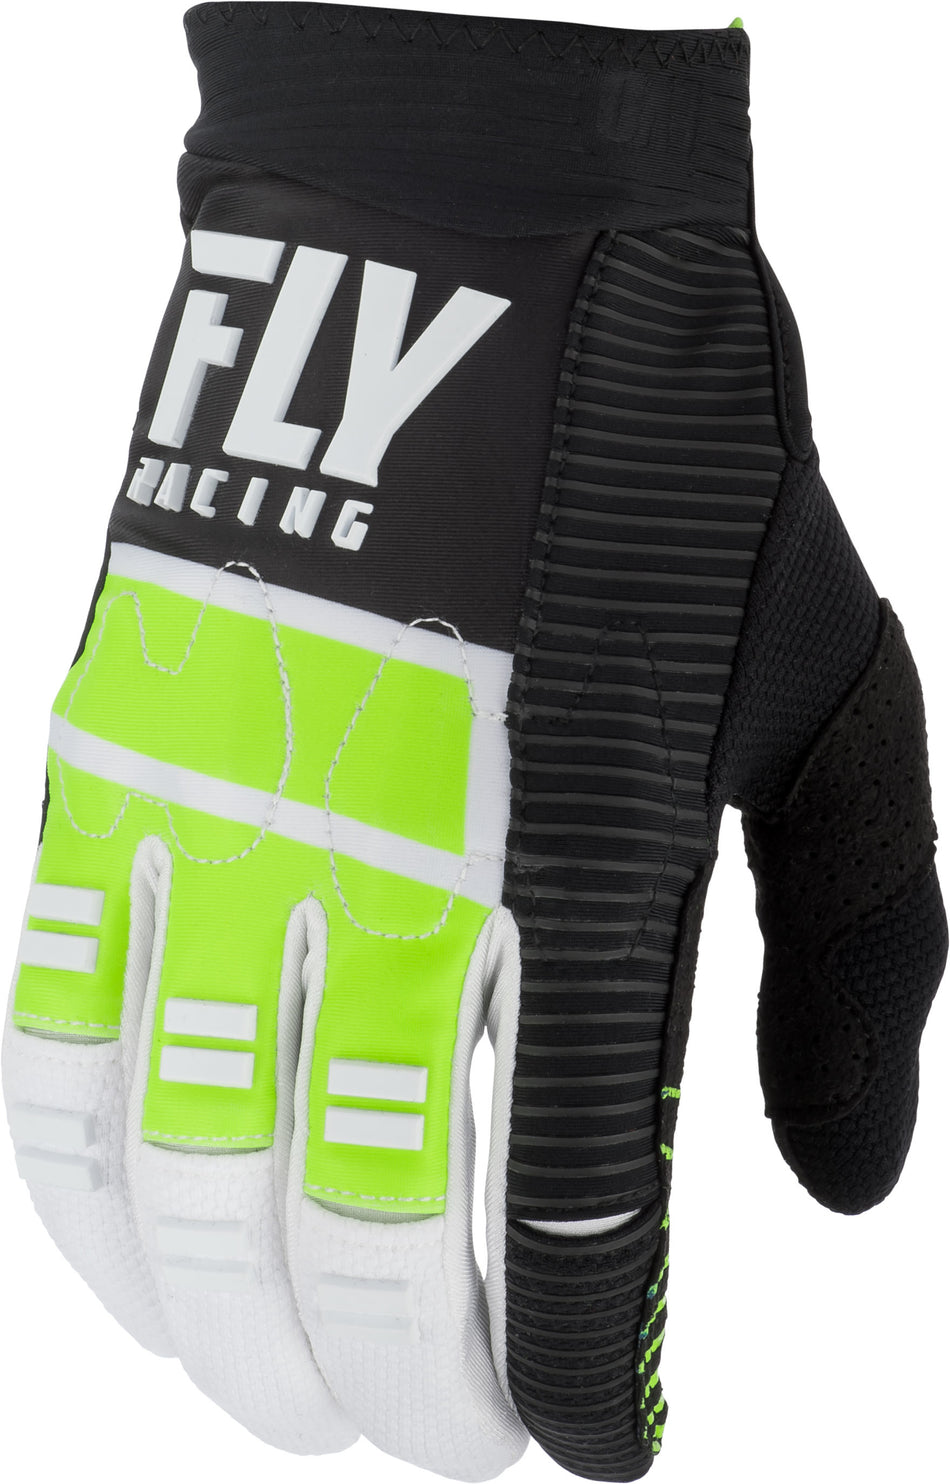 FLY RACING Evolution Dst Gloves Hi-Vis/Black/White Sz 13 372-11713